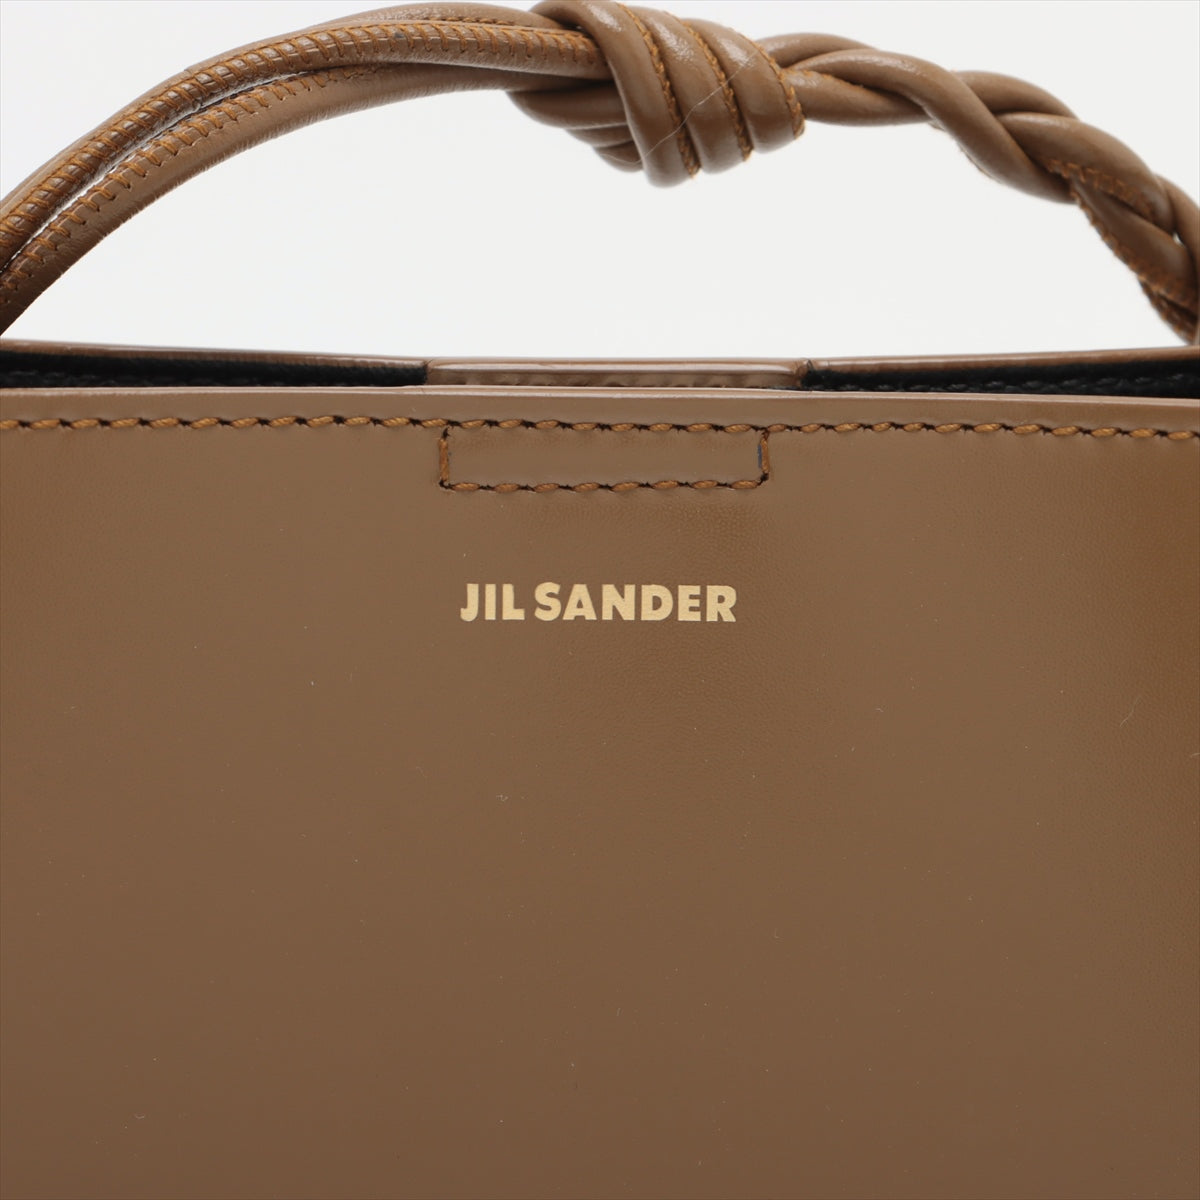 Jilsander Tangle SM Leather Shoulder Bag Brown